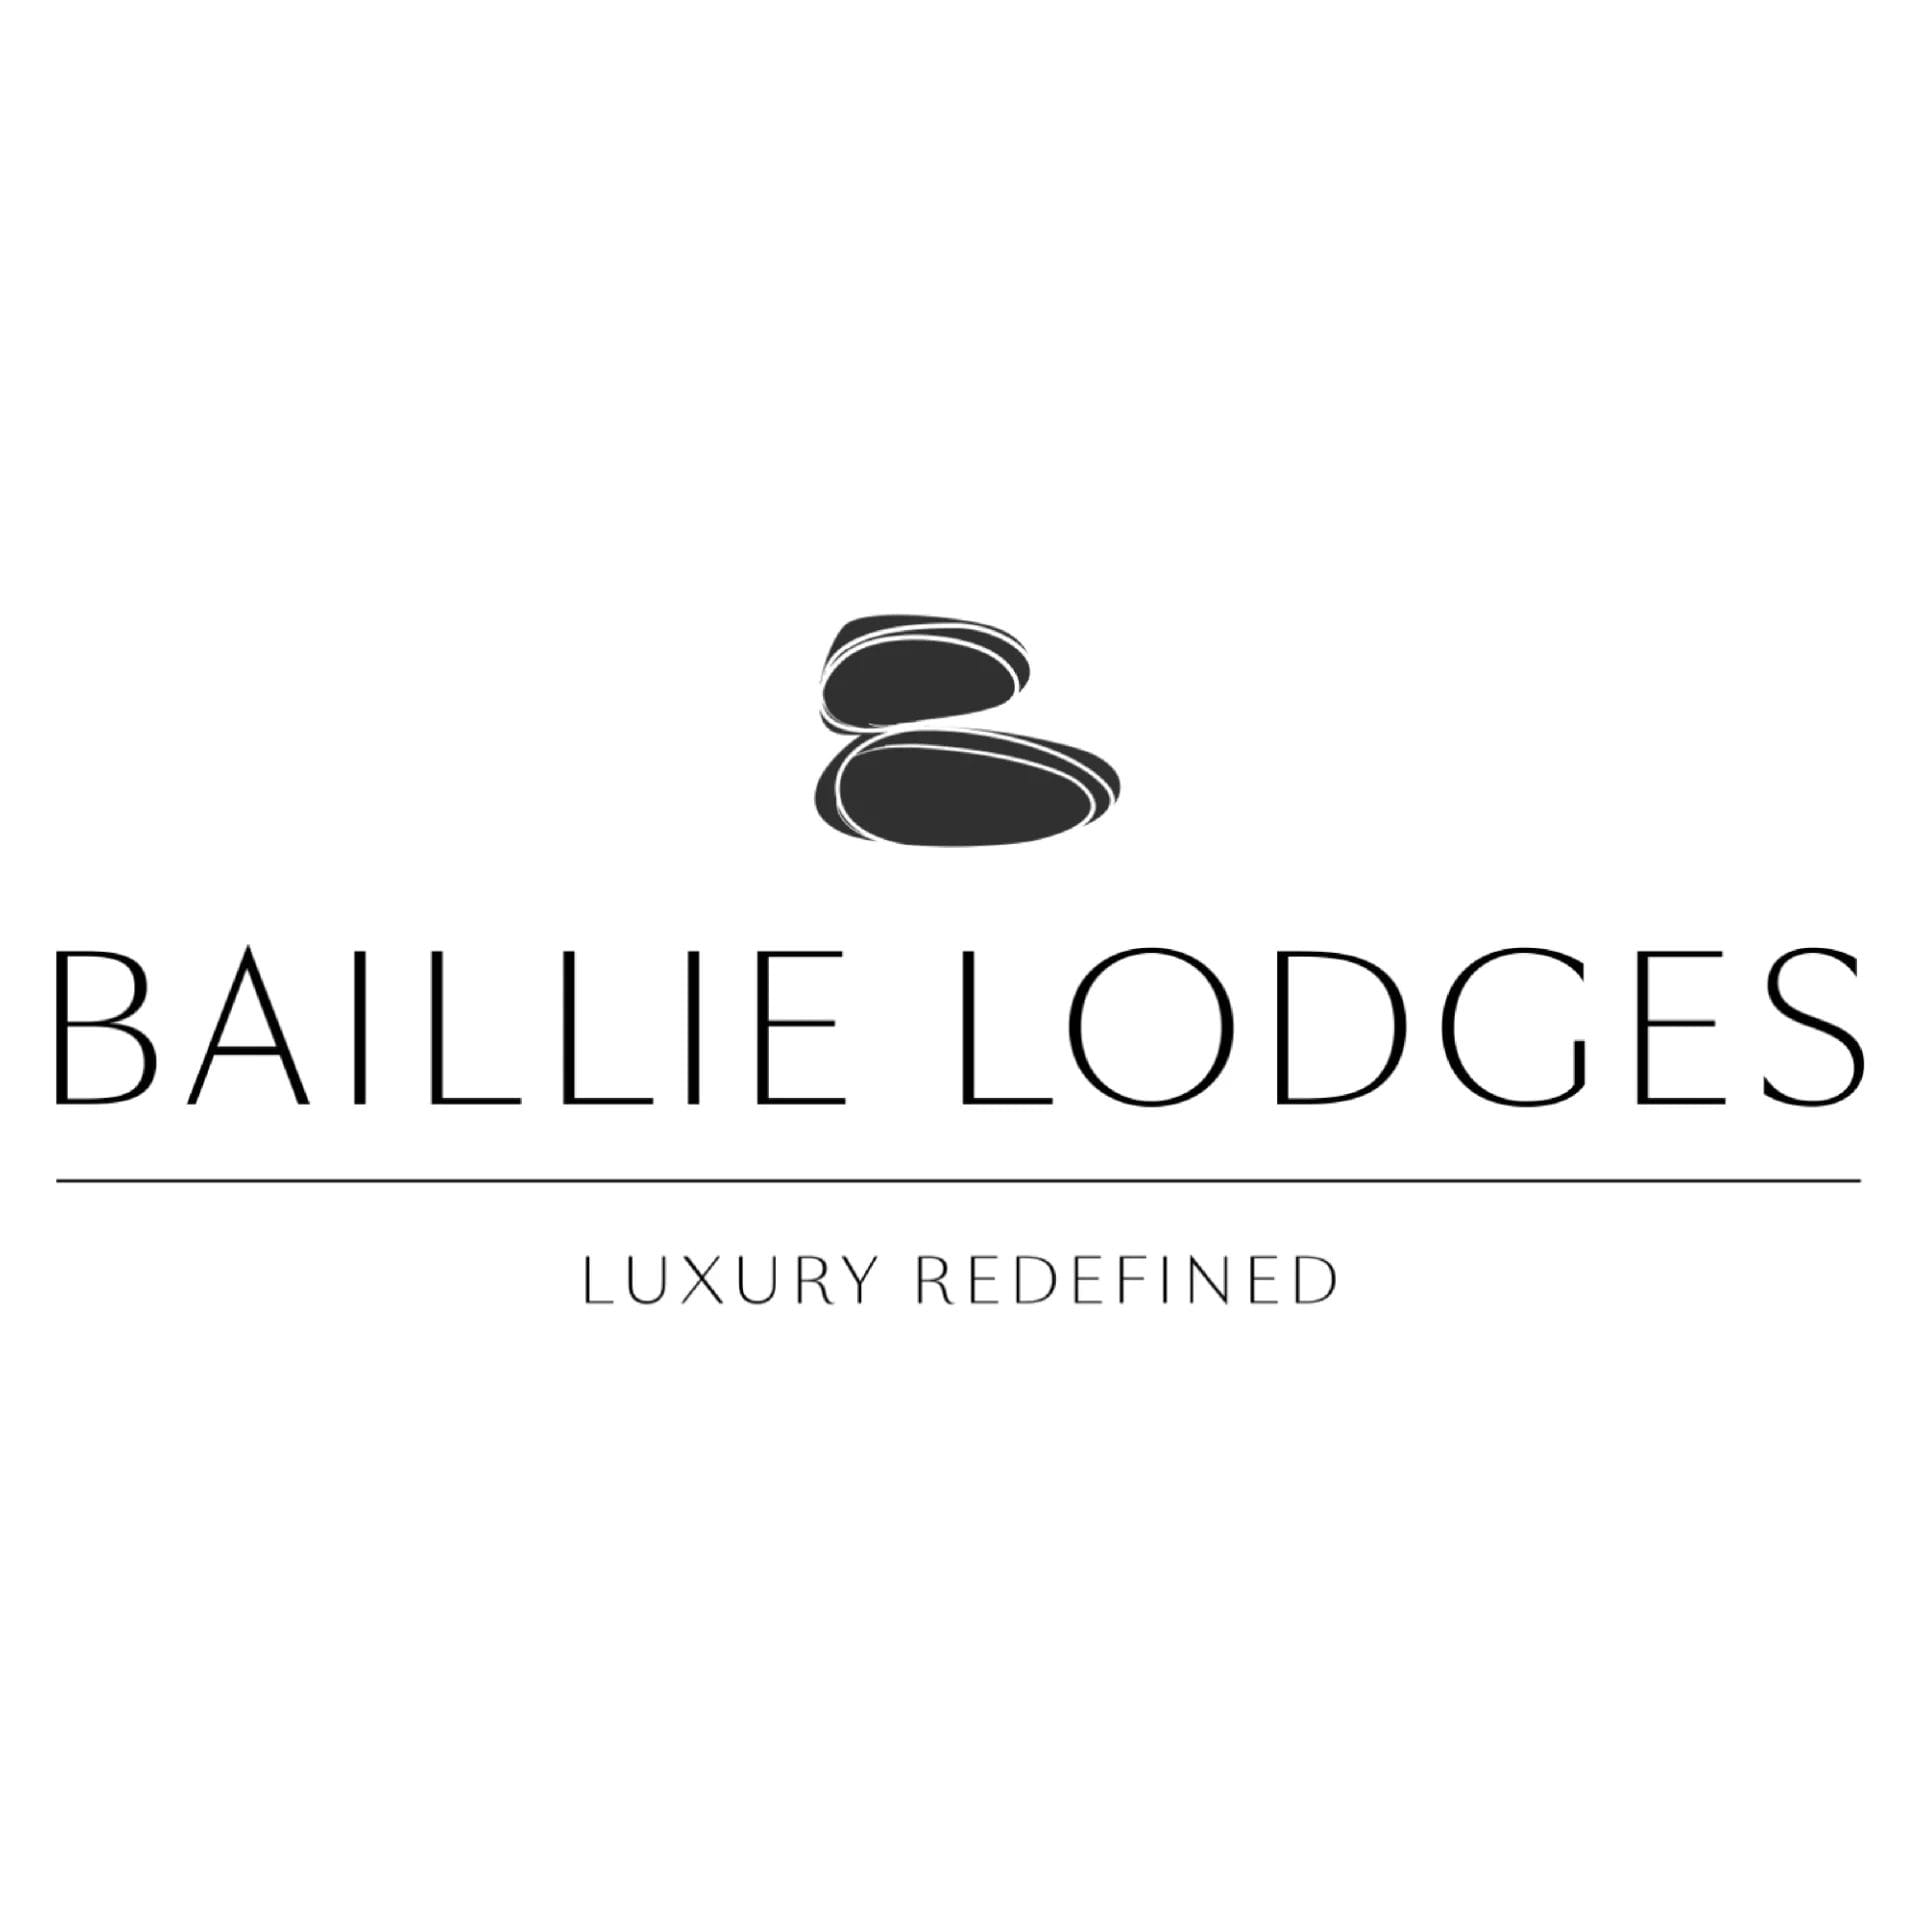 Baillie Lodges